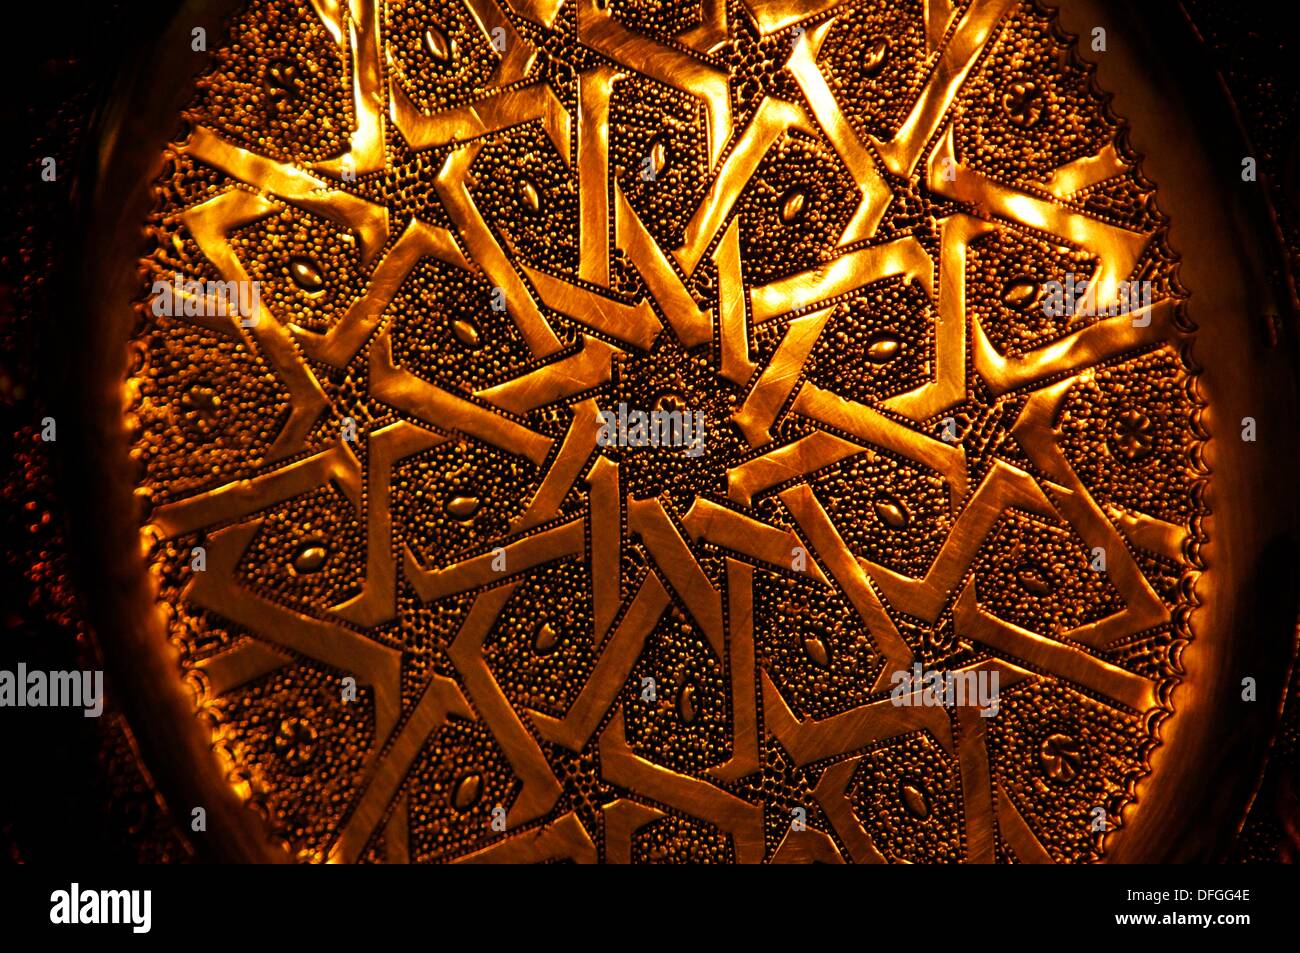 Artisanat : plaque de cuivre, Maroc Banque D'Images